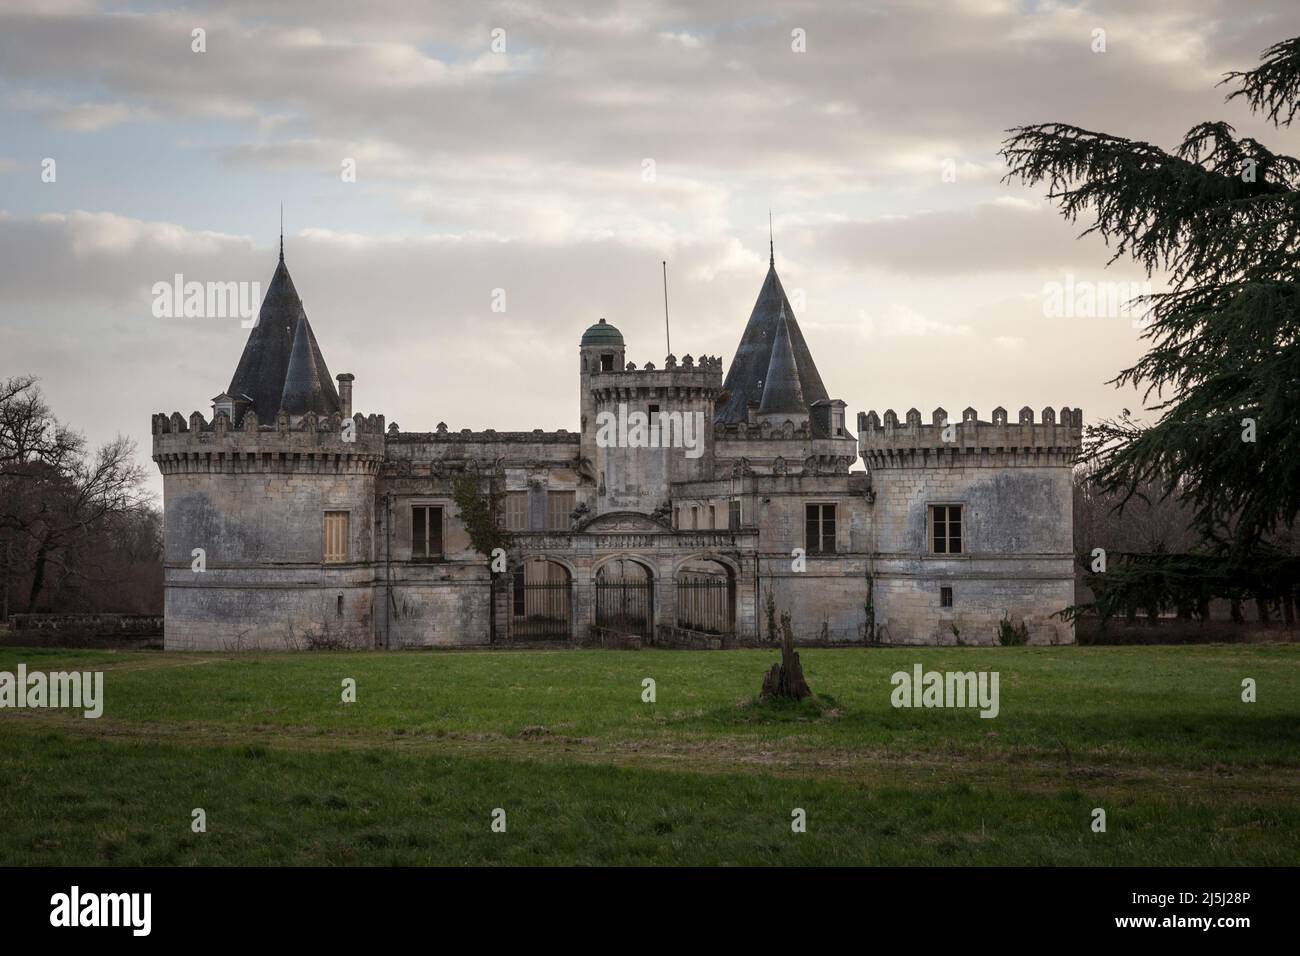 Immagine di un castello francese abbandonato trascurato, chiamato anche Chateau abandonne, nel sud-ovest della Francia, in aquitania, Francia. Foto Stock